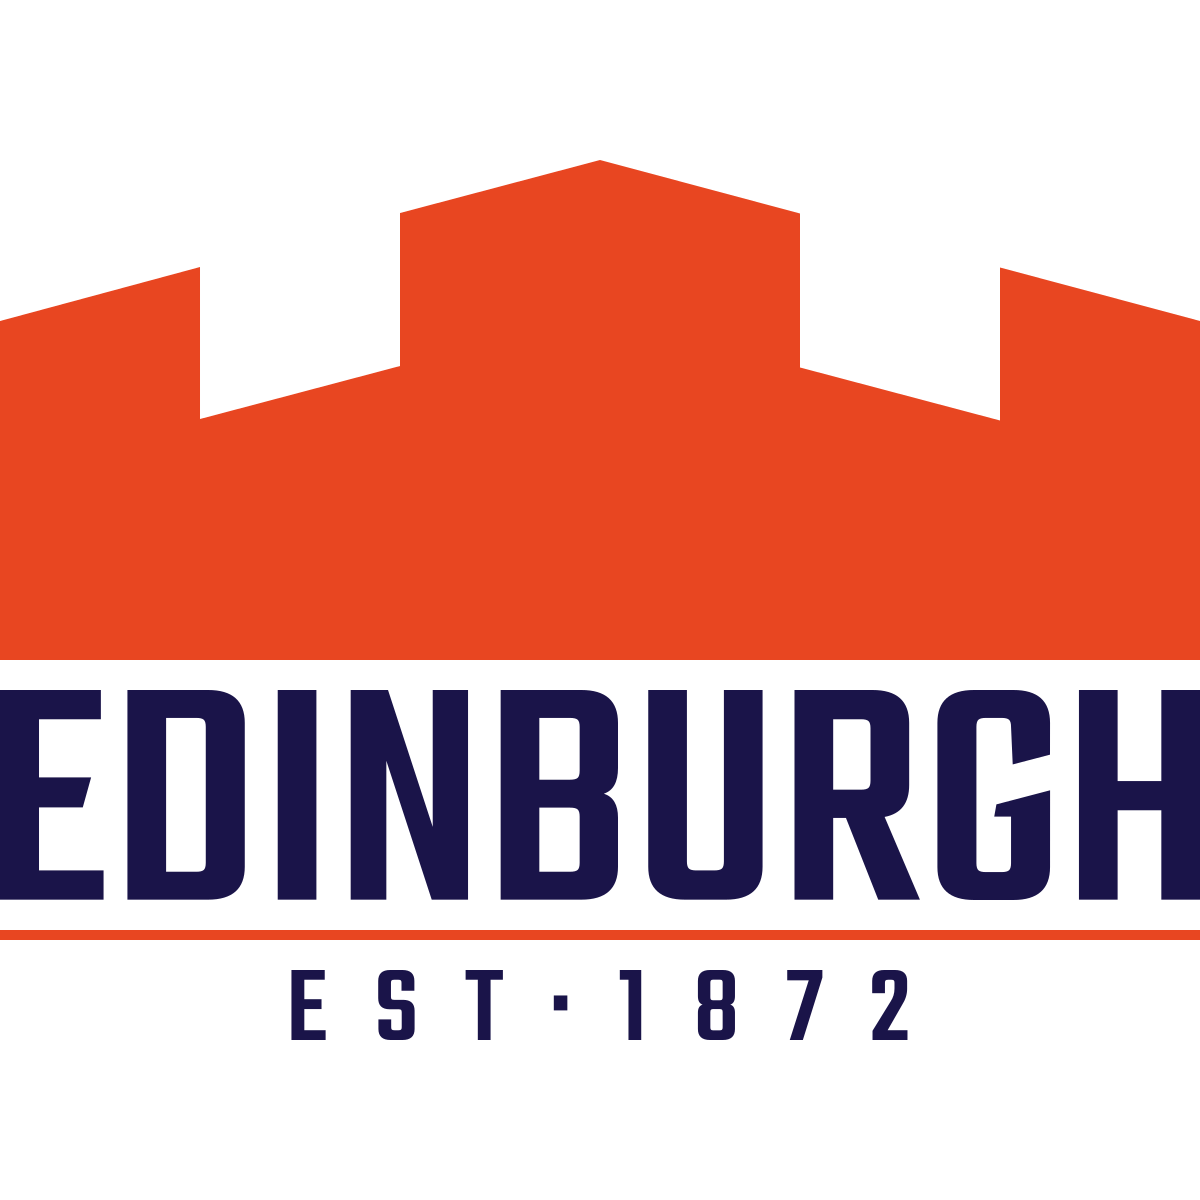 Edinburgh Rugby